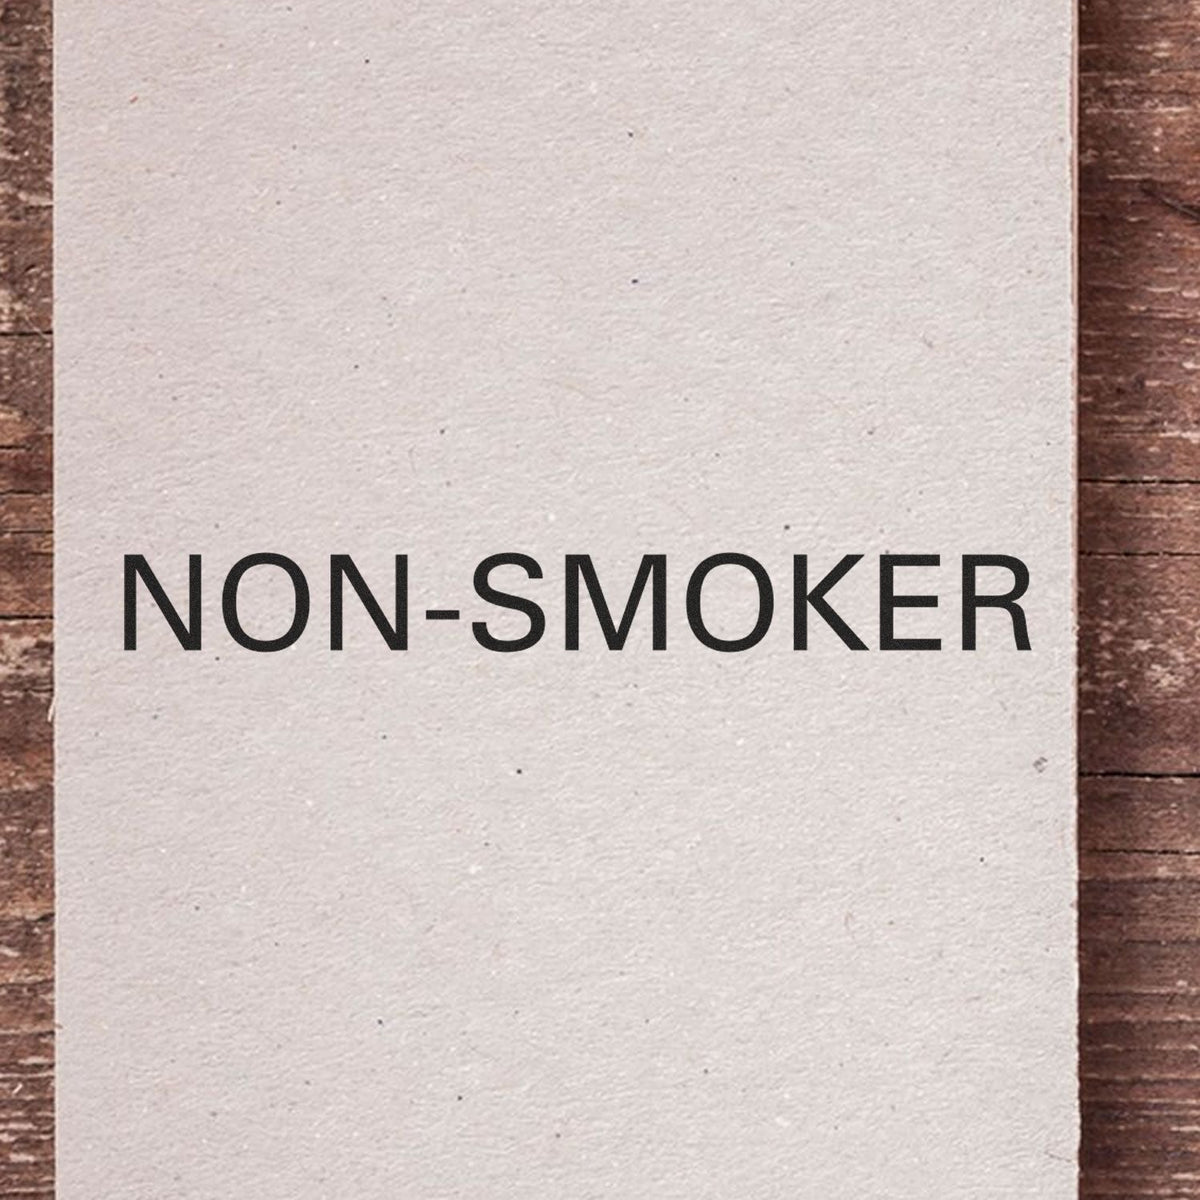 Self-Inking Non-Smoker Stamp Lifestyle Photo